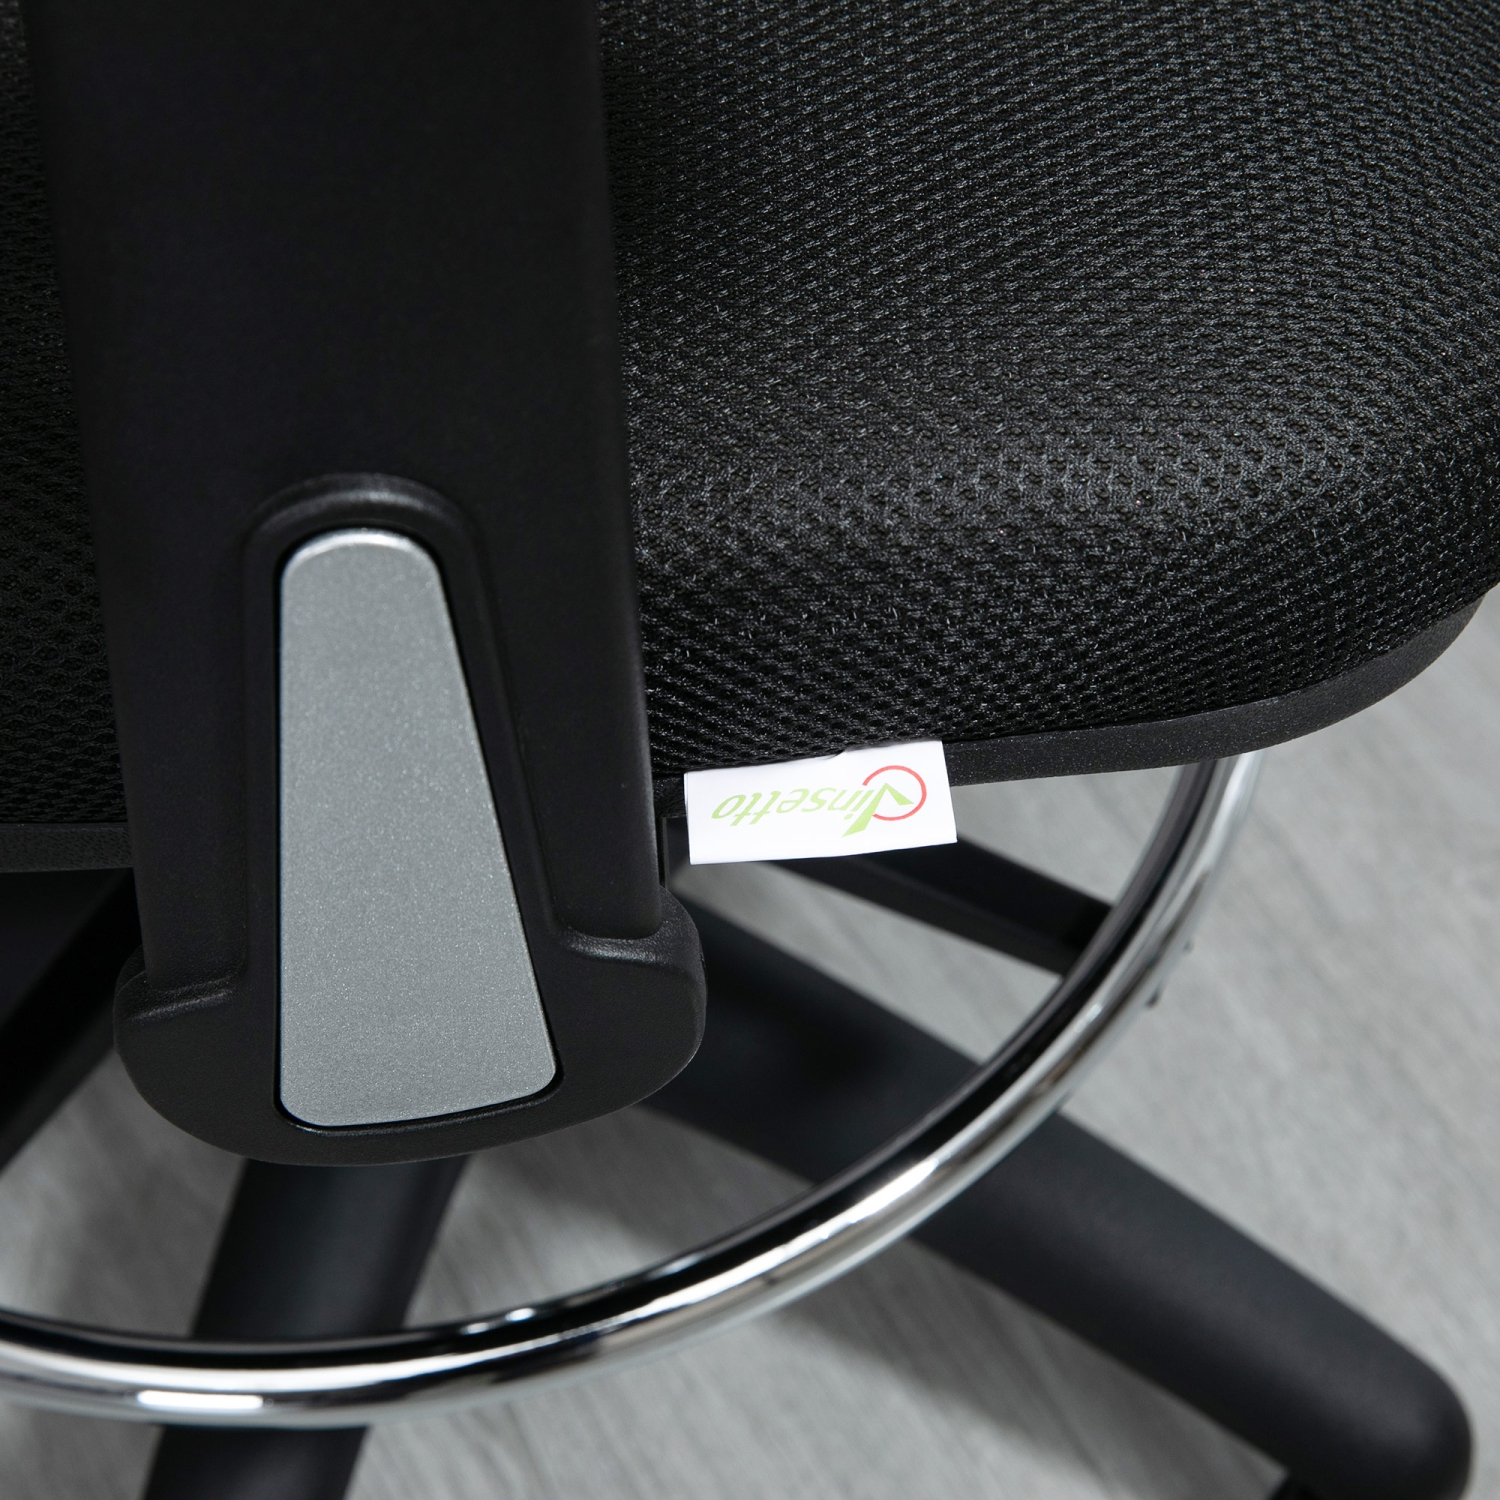 Vinsetto Chaise de bureau haute pour bureau debout avec support lombaire,  noir